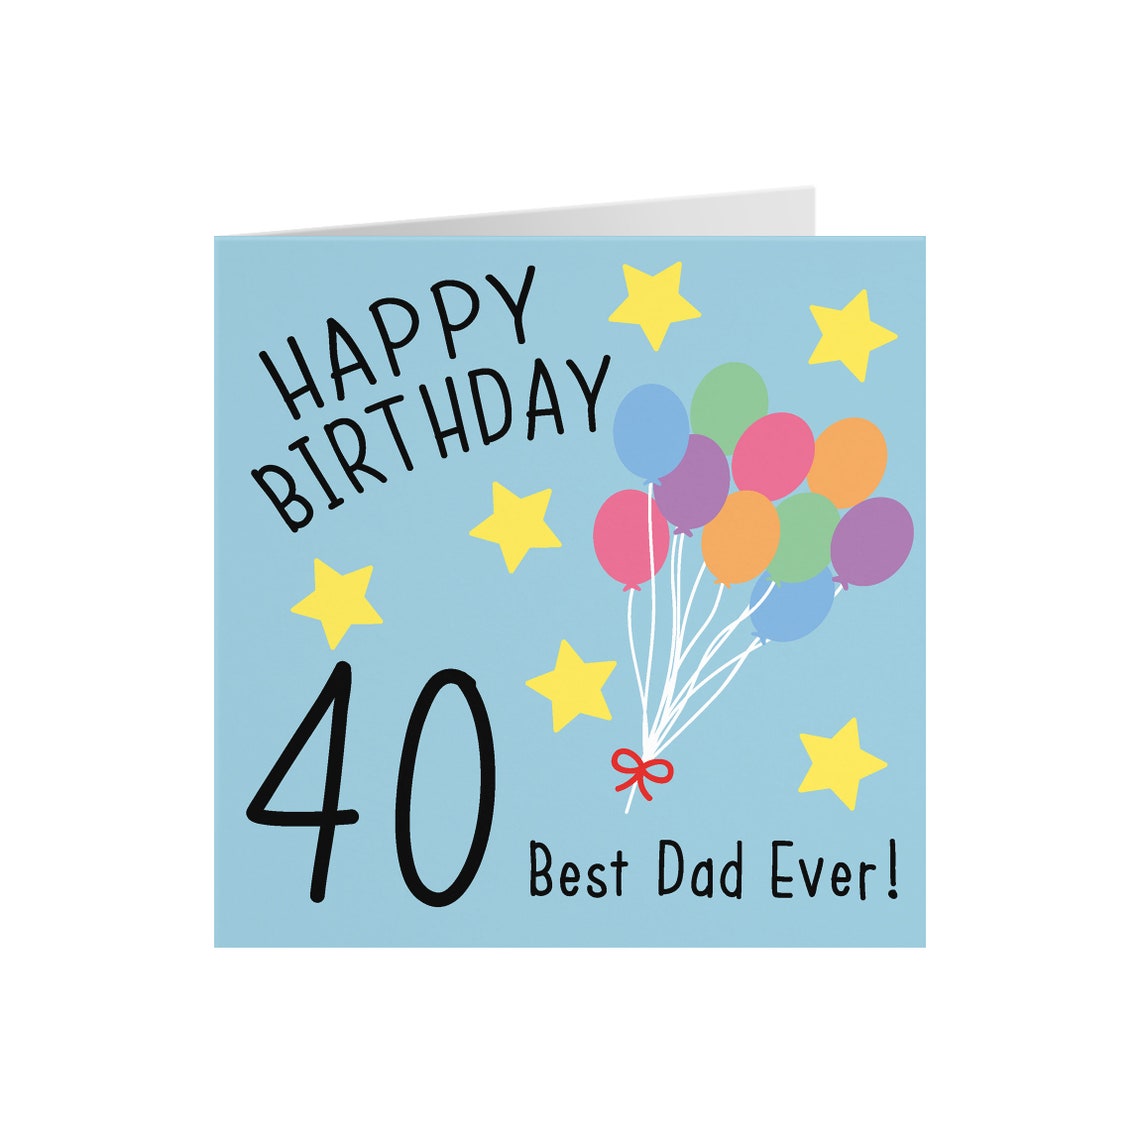 Dad 40th Birthday Card Happy Birthday 40 Best Dad Ever | Etsy